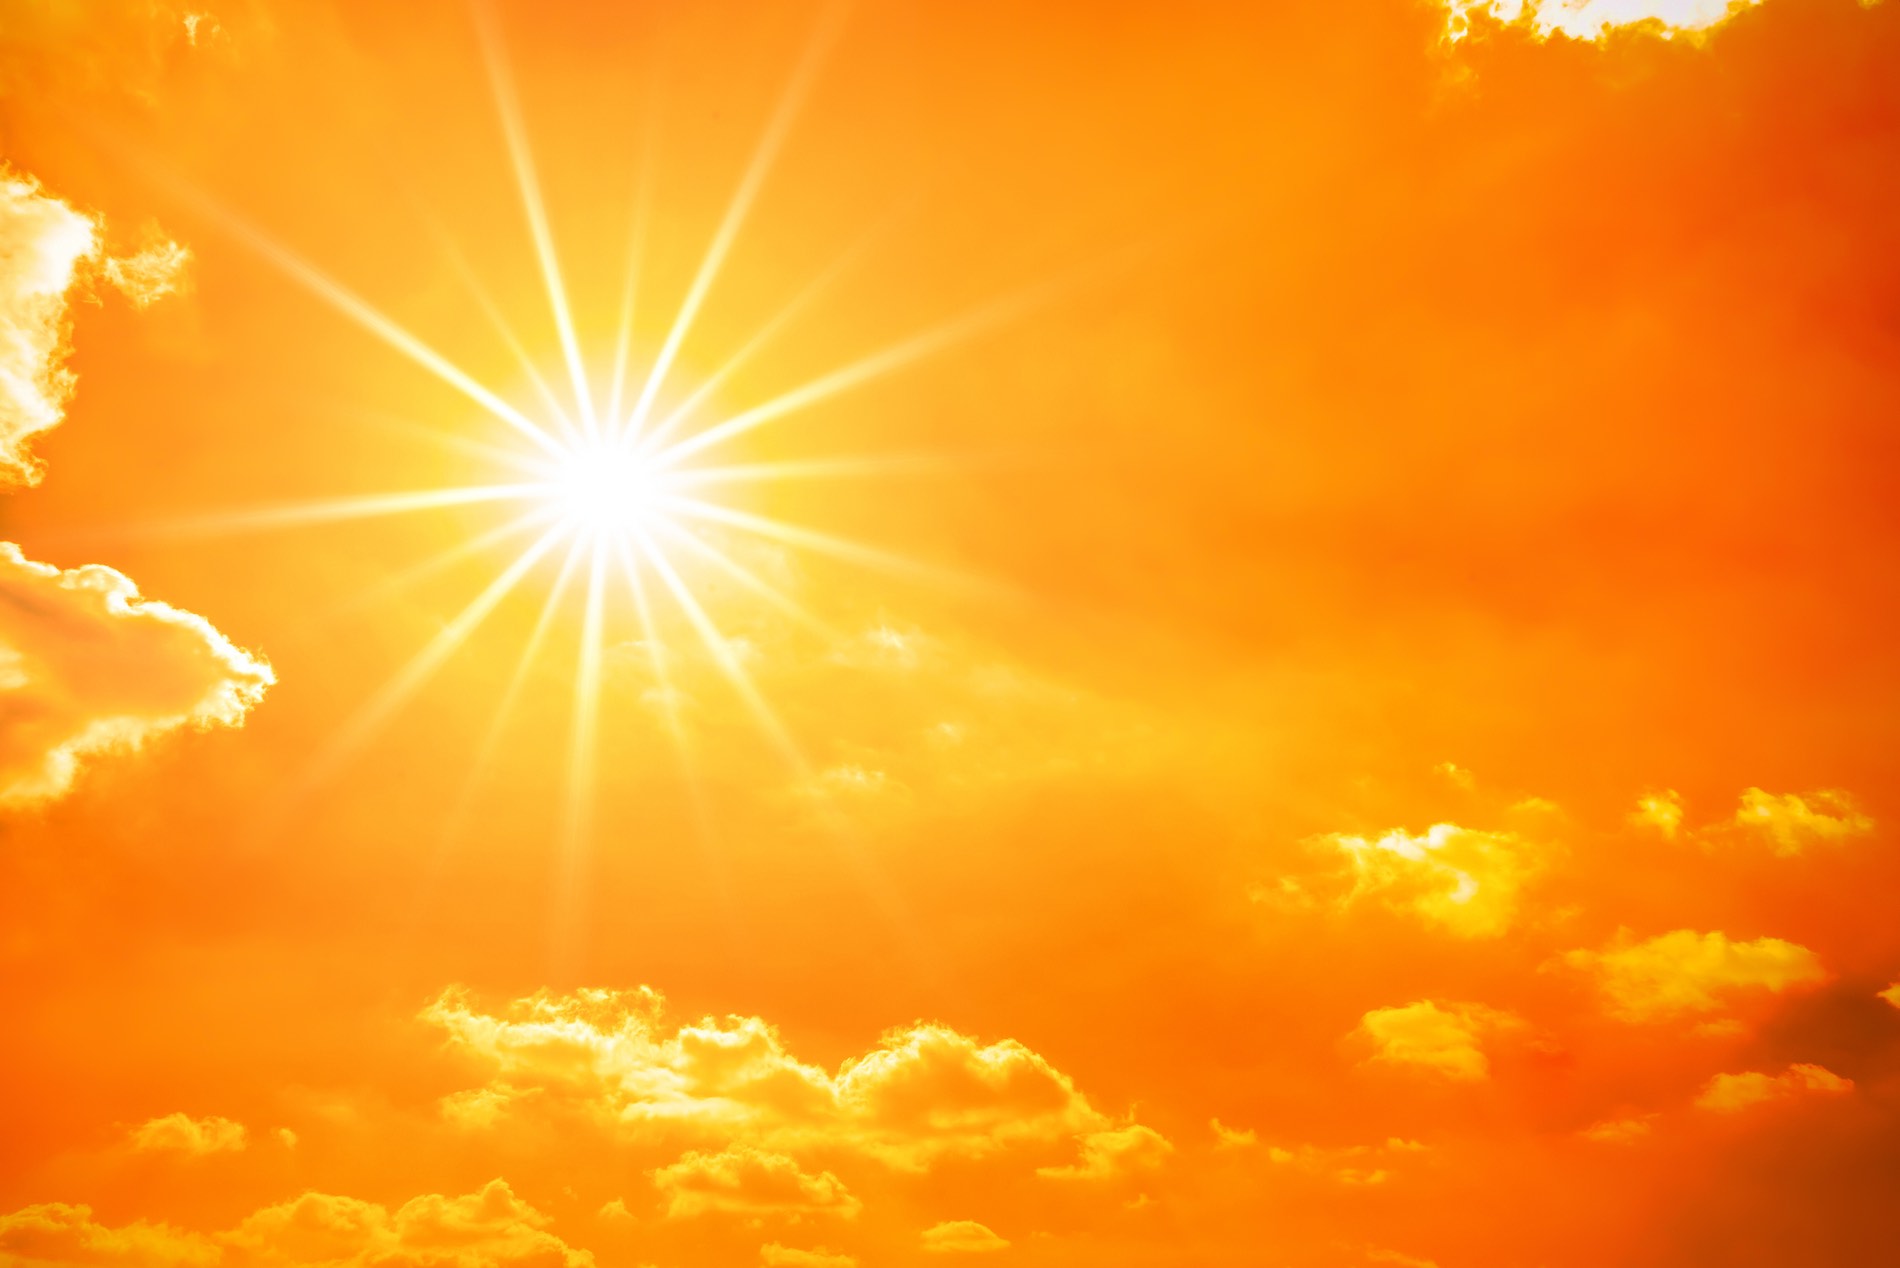 ΠΟΥ: «Ένας στους τρεις θανάτους από καρκίνο του δέρματος οφείλεται στην εργασία κάτω από τον ήλιο»